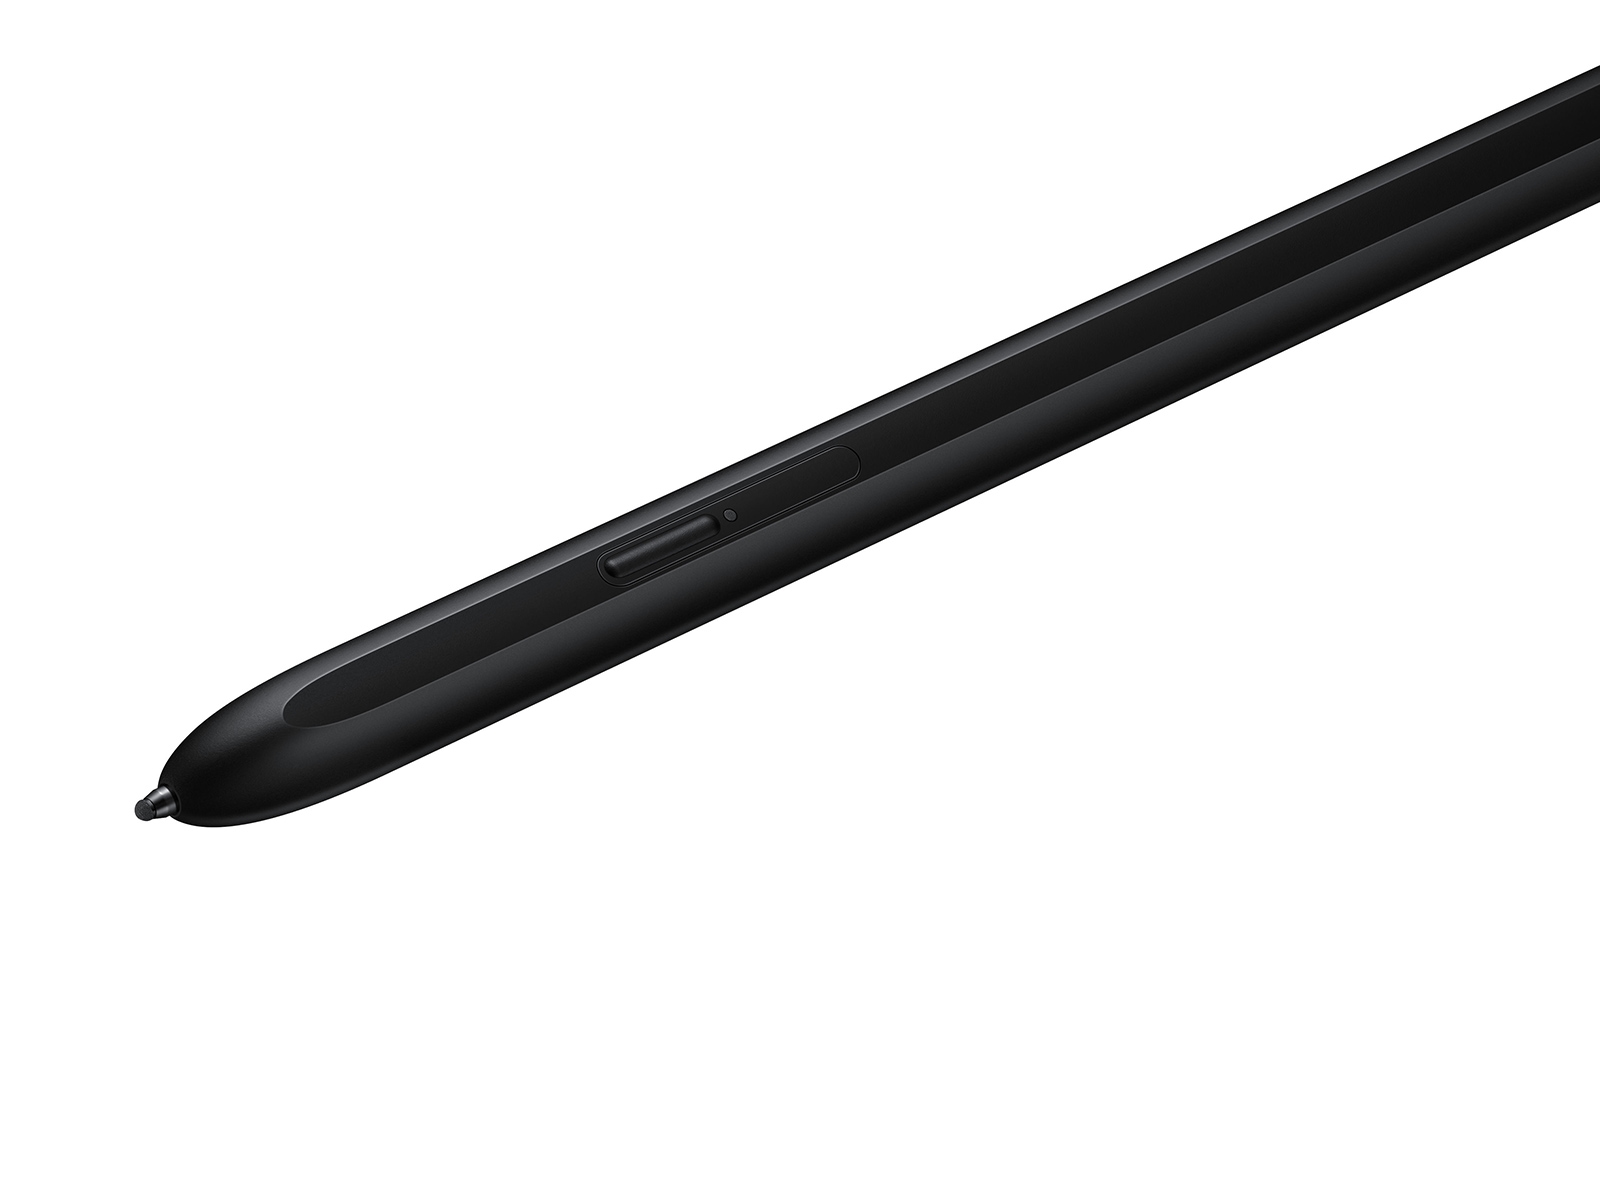 S Pen Pro, Black Mobile Accessories - EJ-P5450SBEGUS